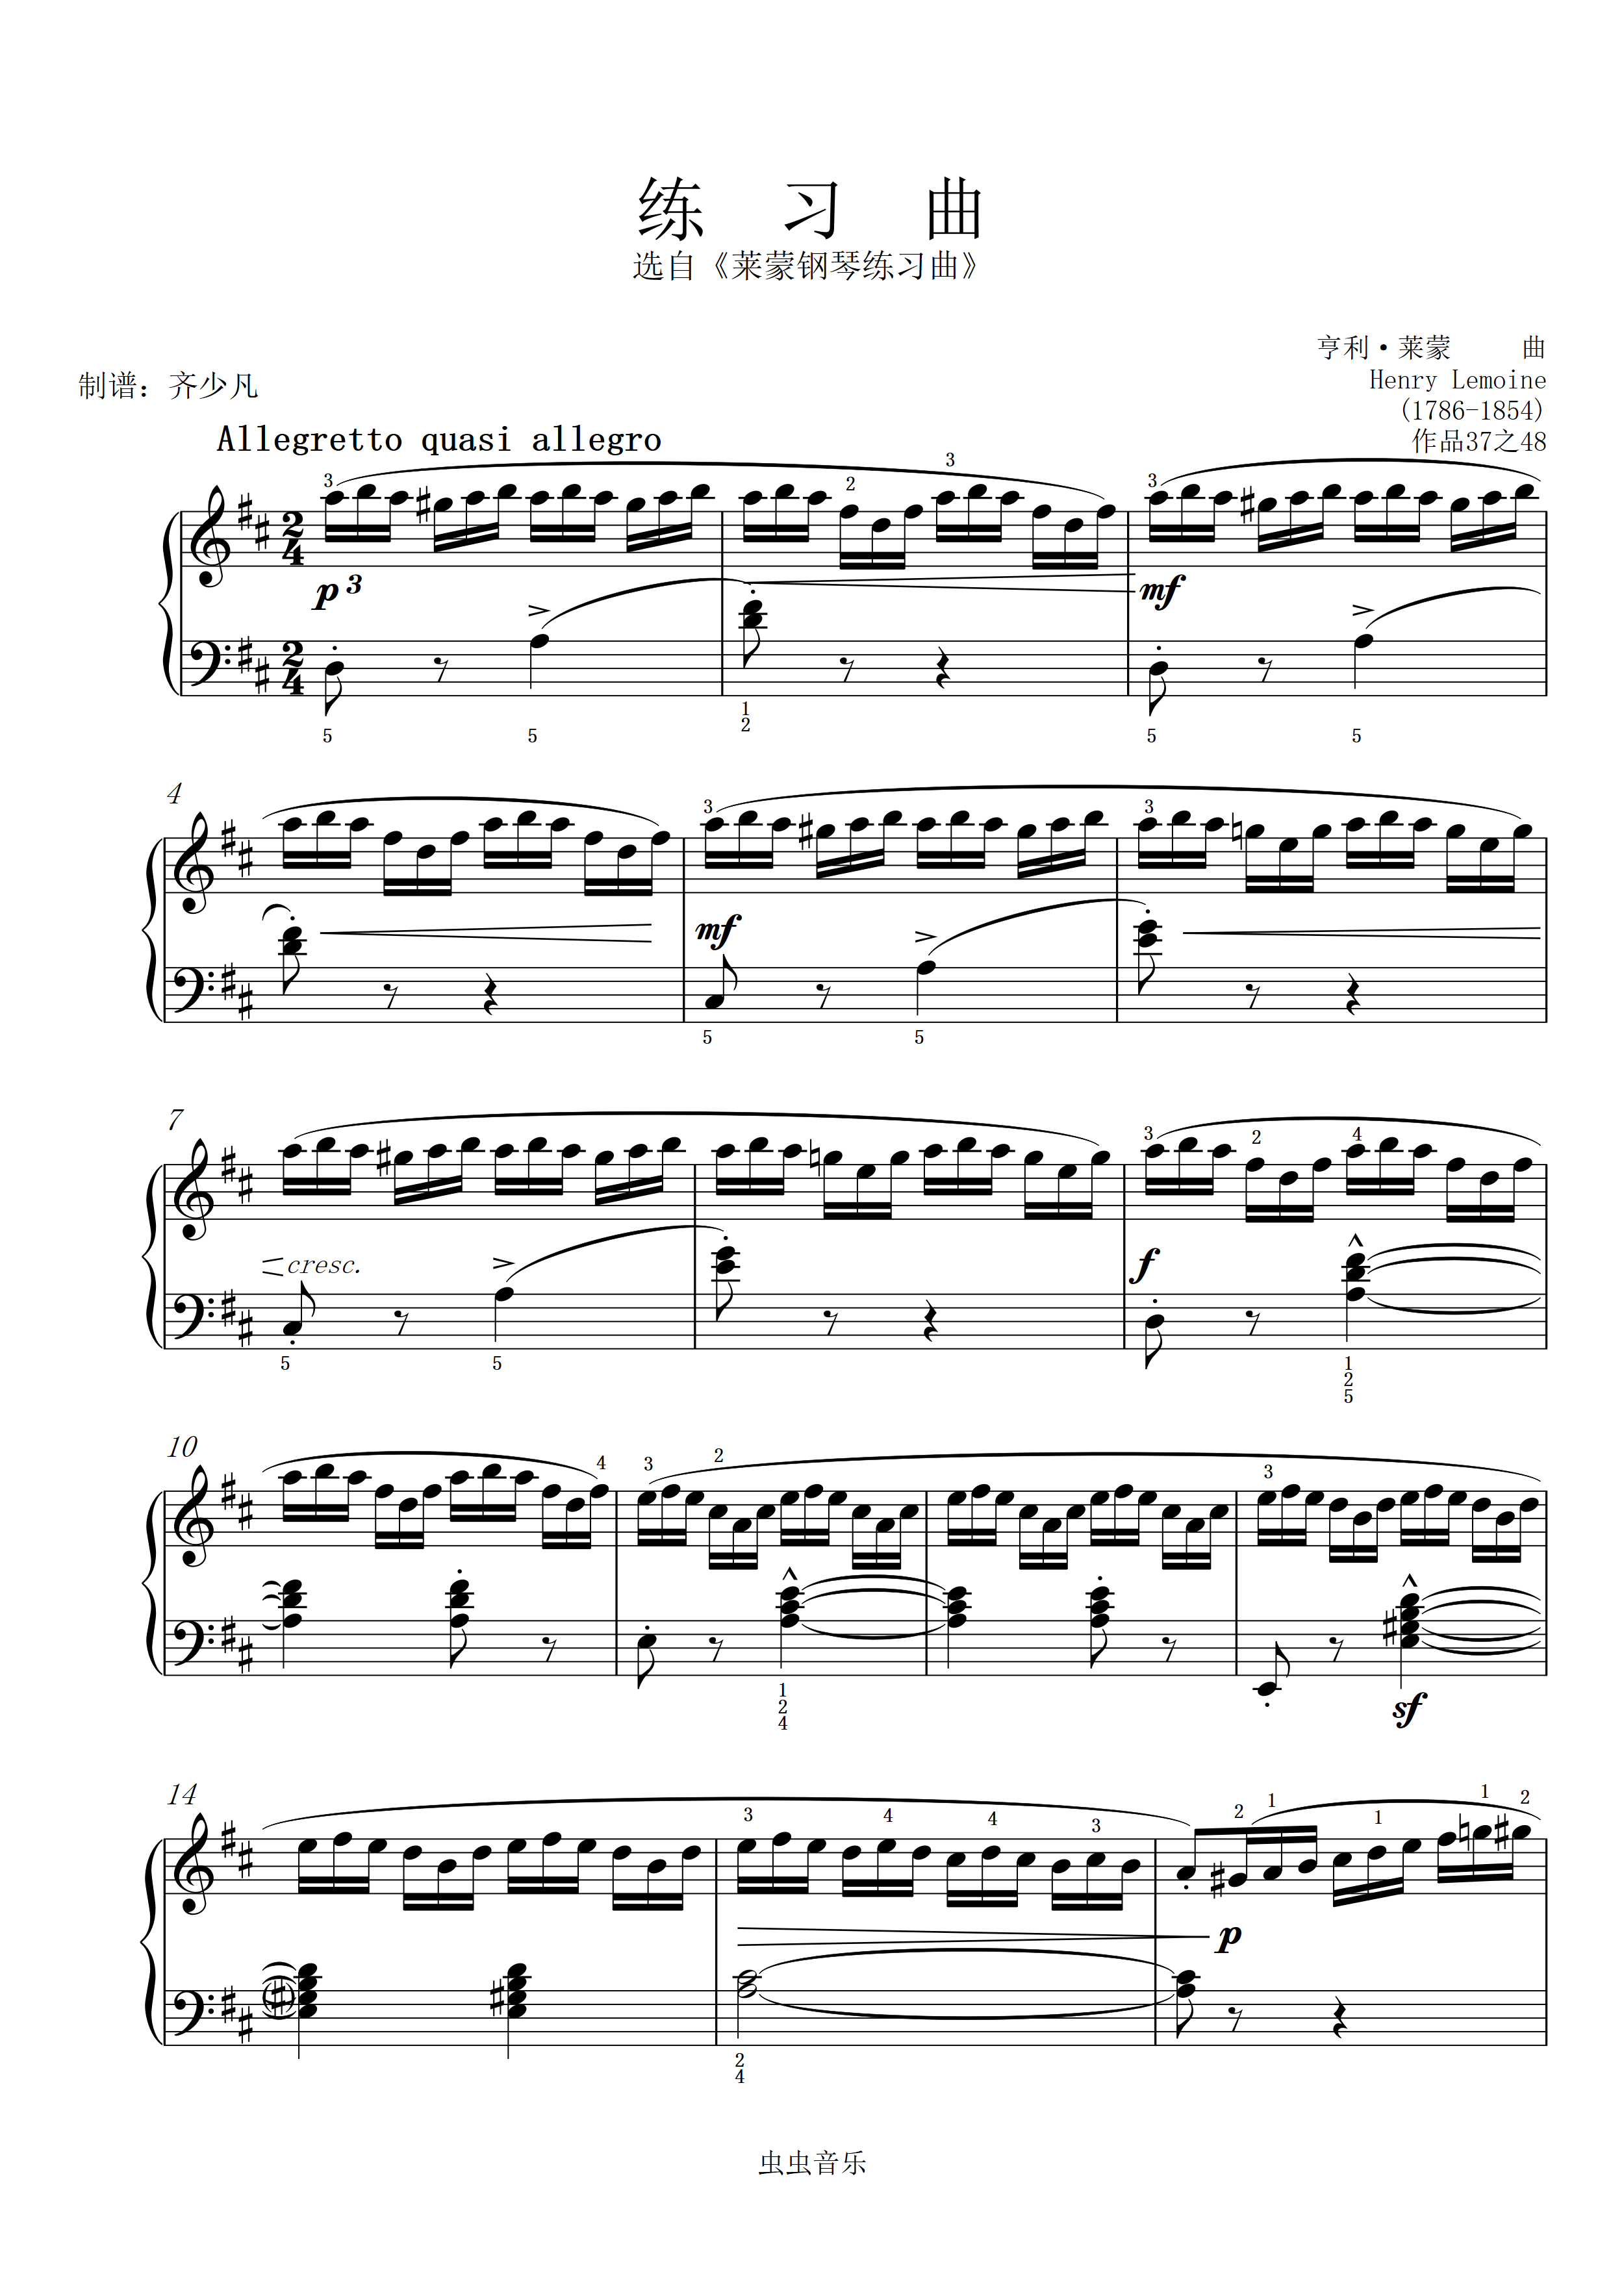 钢琴谱:5级练习曲